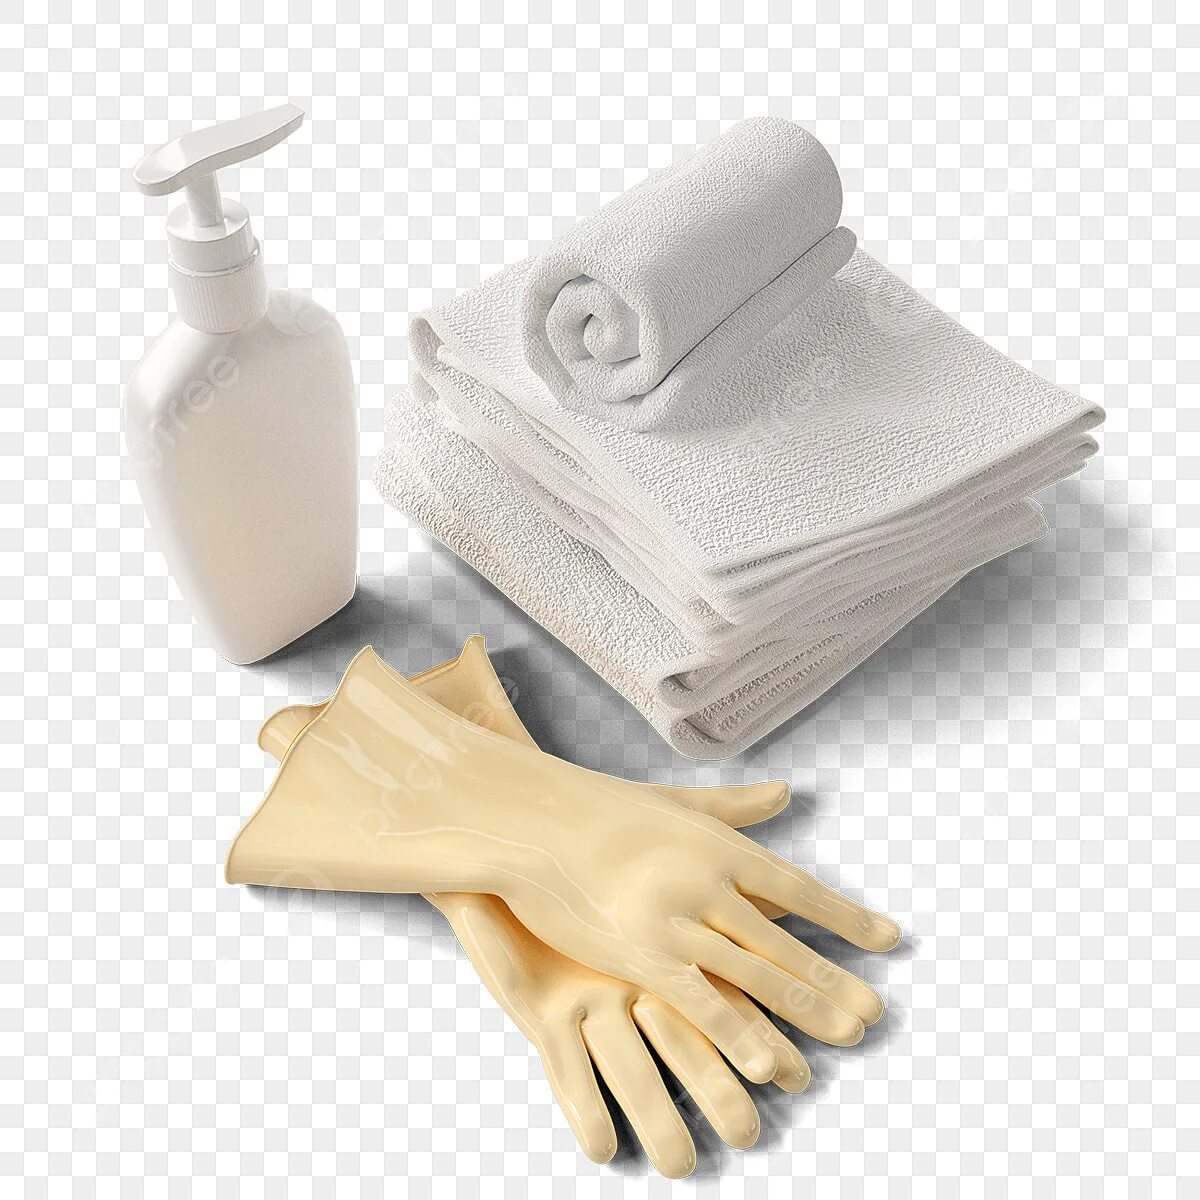 Перчатки полотенце. Перчатка полотенце резиновая. Перчатки полотенце для чего. Автомобилю мойушний тряапка перчатку полотенца. Полотенце перчатка